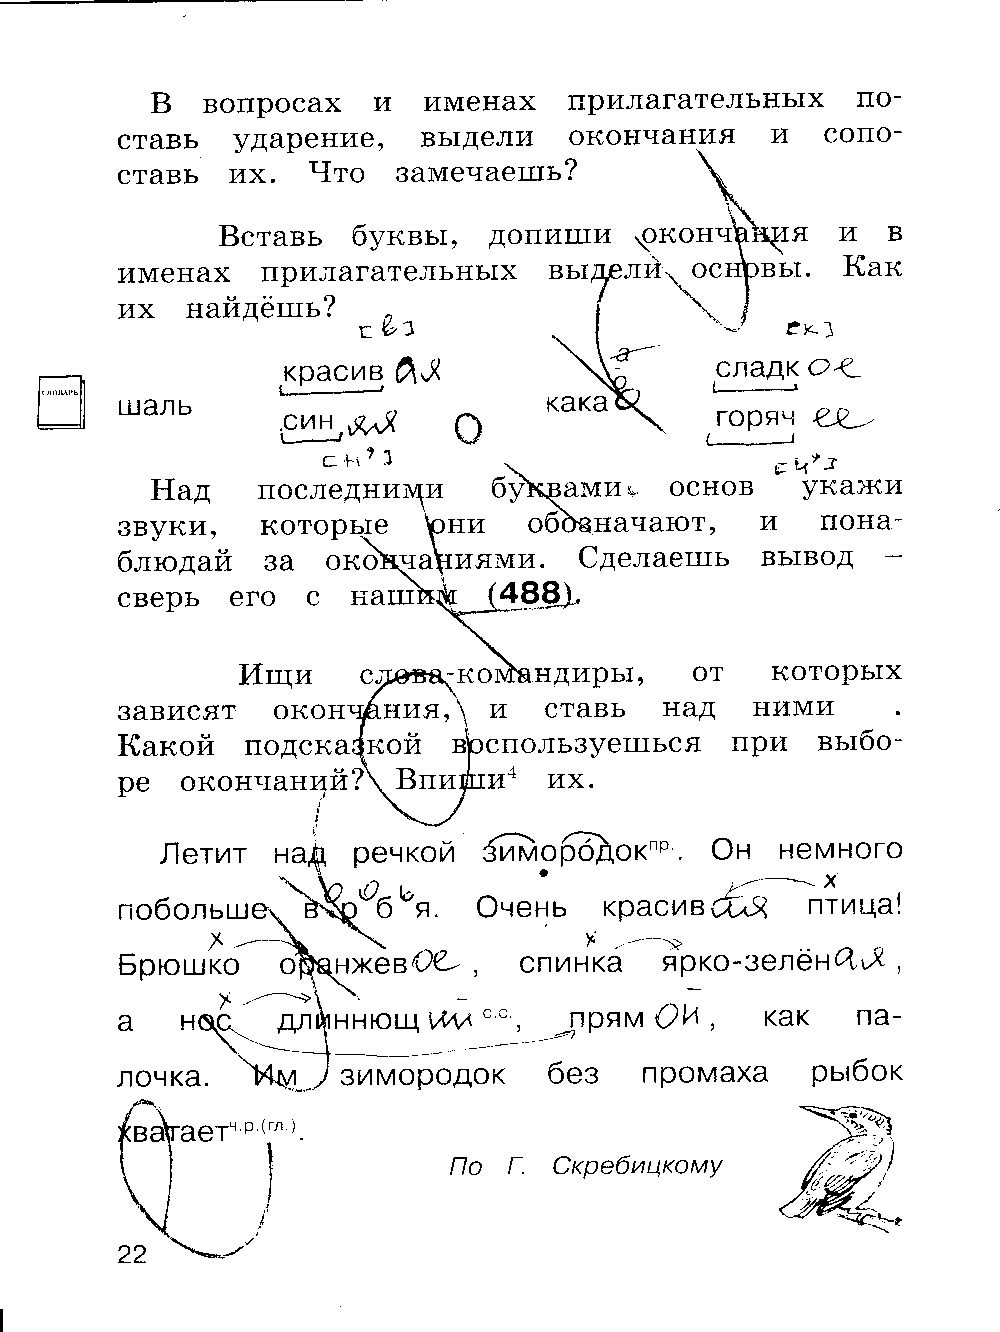 ГДЗ Русский язык 3 класс - стр. 22